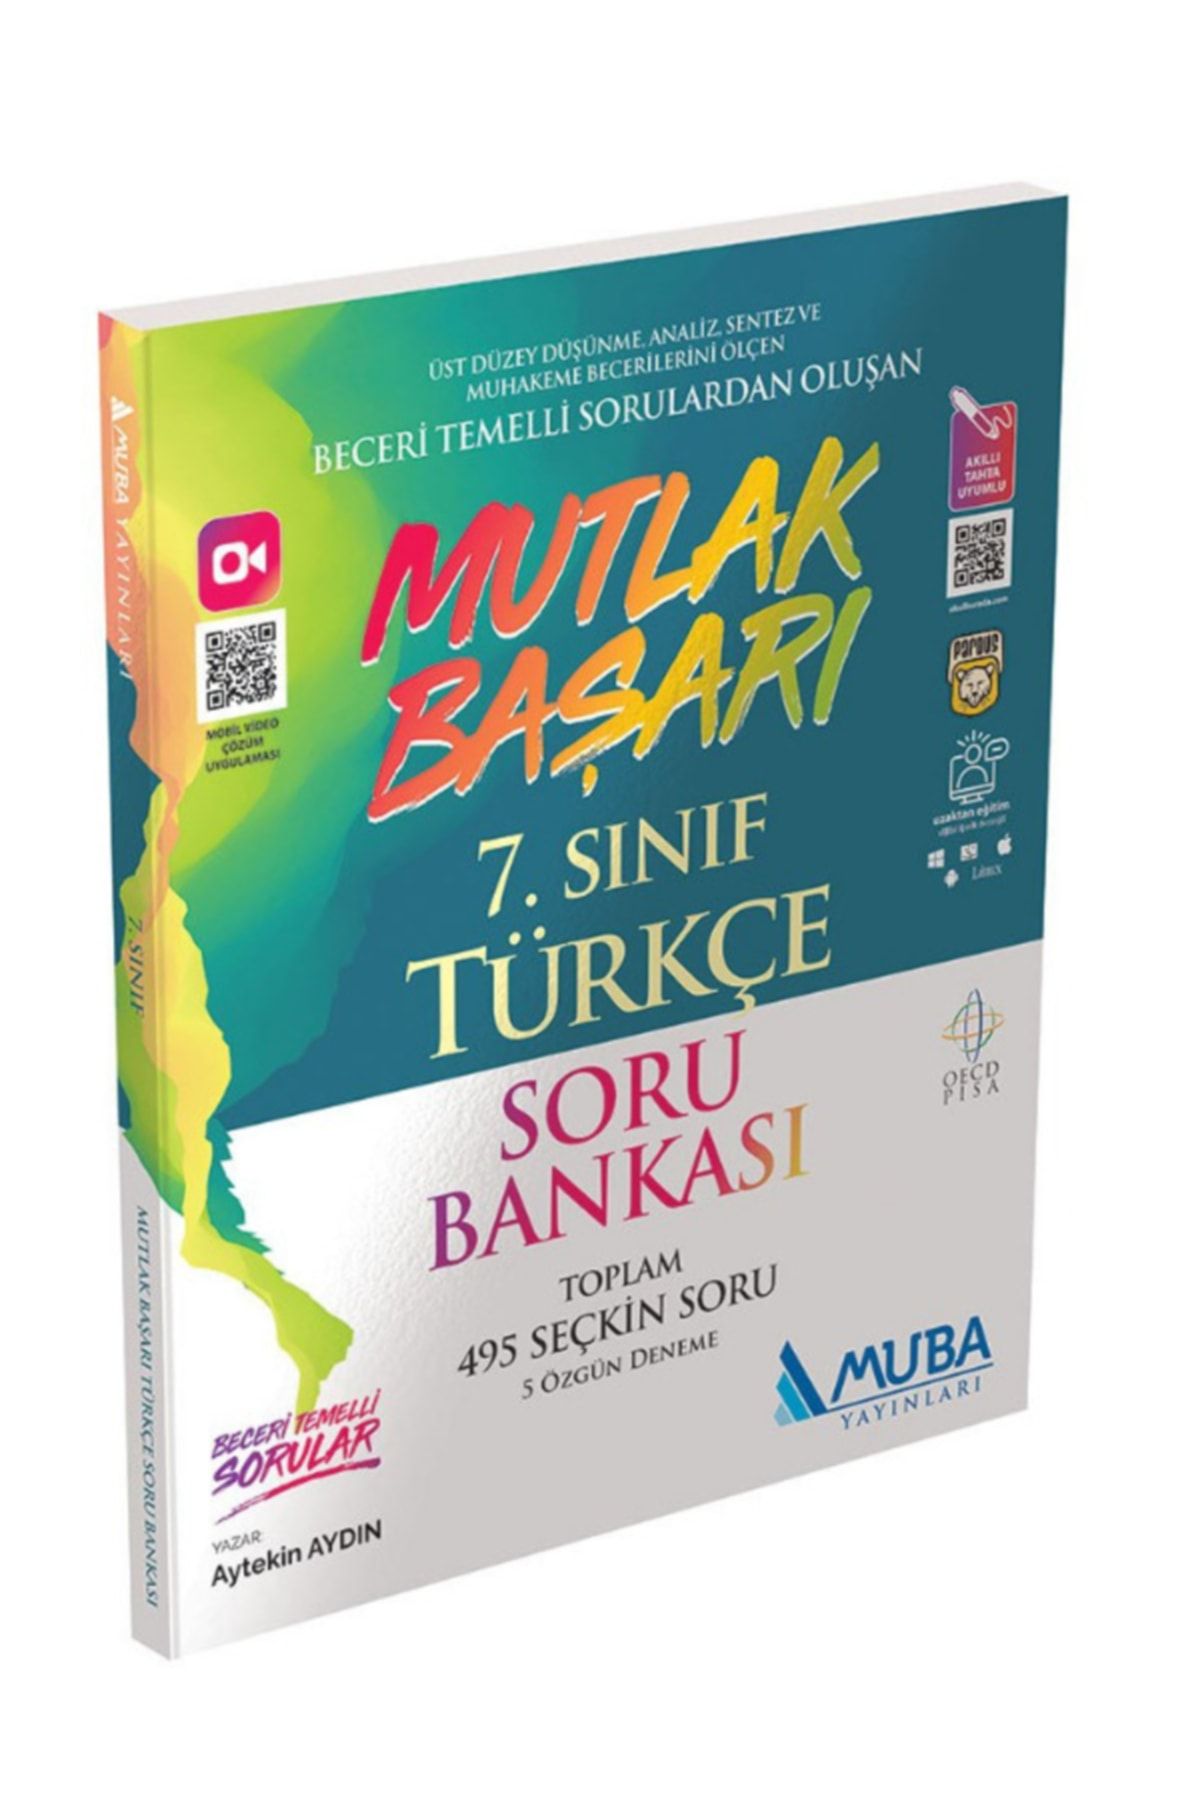 Muba Yayınları 7.sınıf Mutlak Başarı Türkçe Soru Bankası